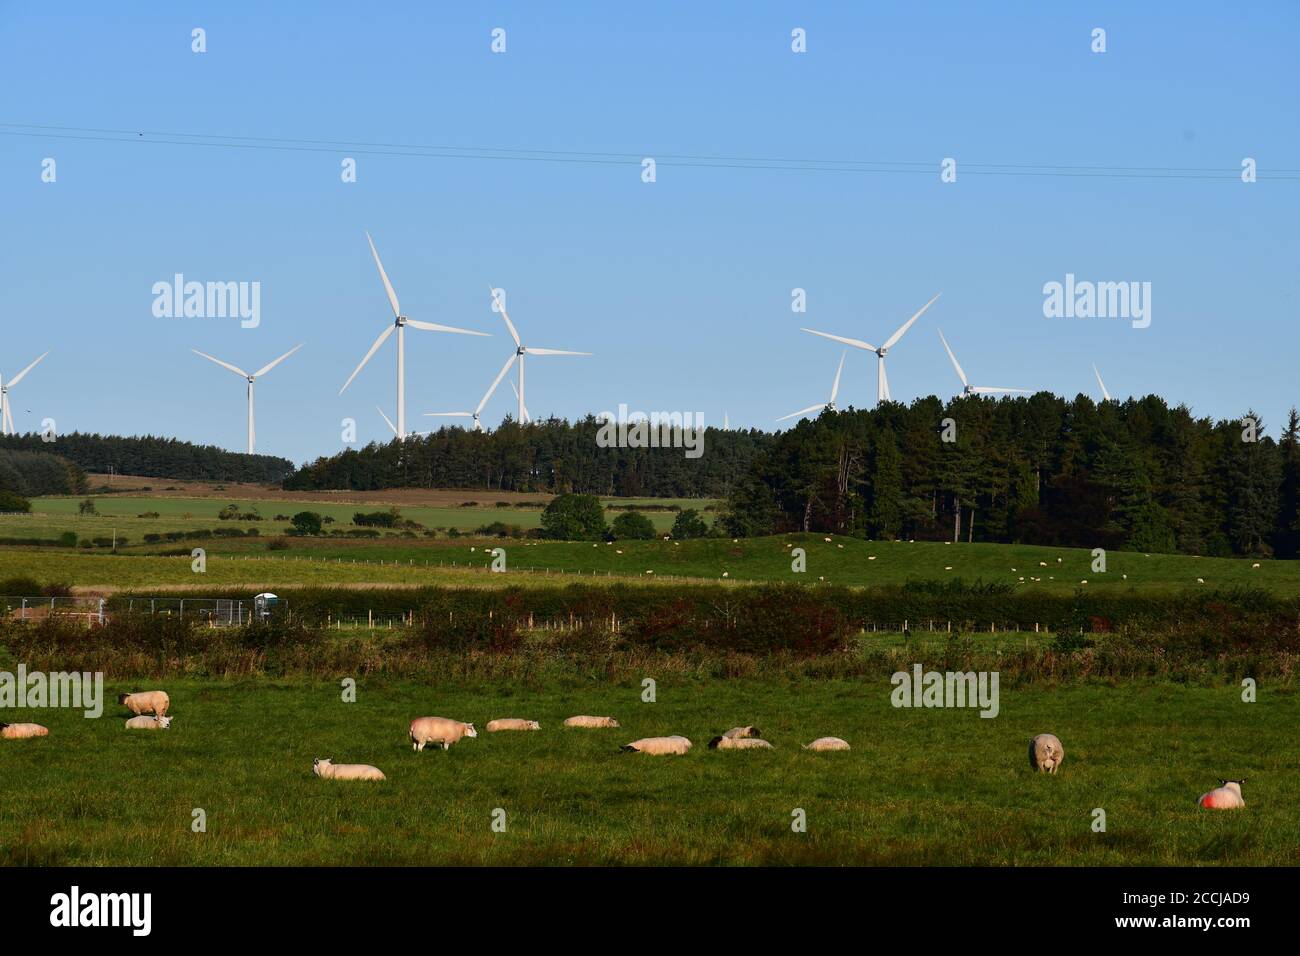 Un horizonte de turbinas eólicas en un entorno agrícola rural, mostrando el uso de la producción de energía sostenible y respetuosa con el medio ambiente. Foto de stock